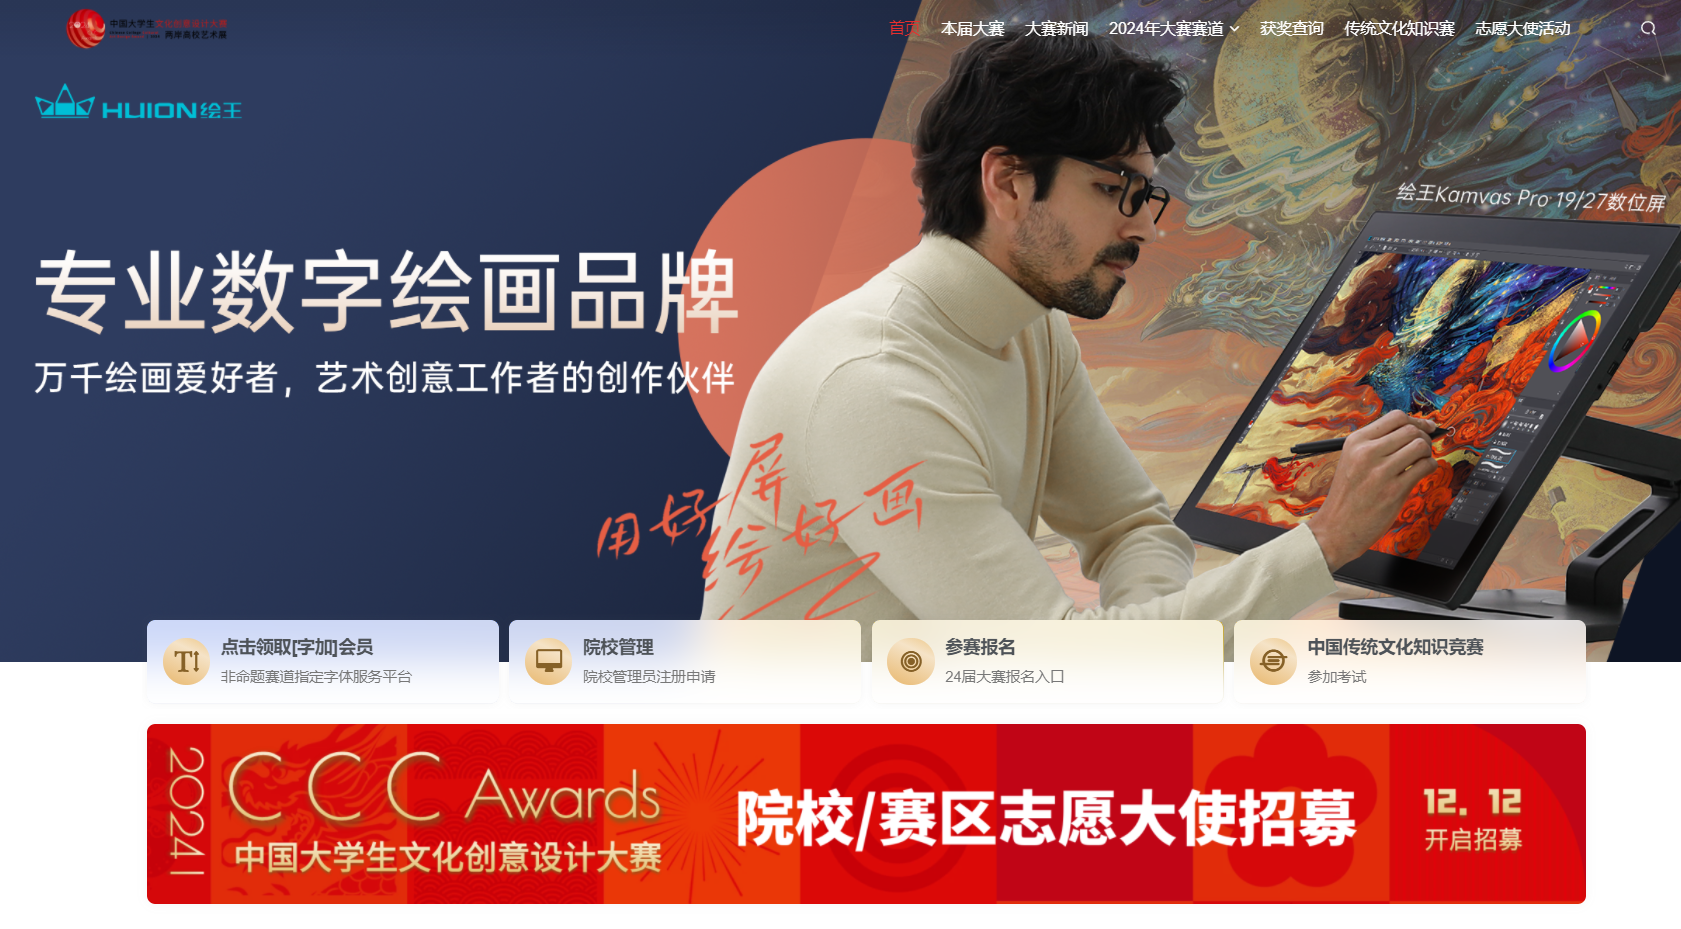 24年中国大学生文化创意设计大赛与绘王达成命题合作